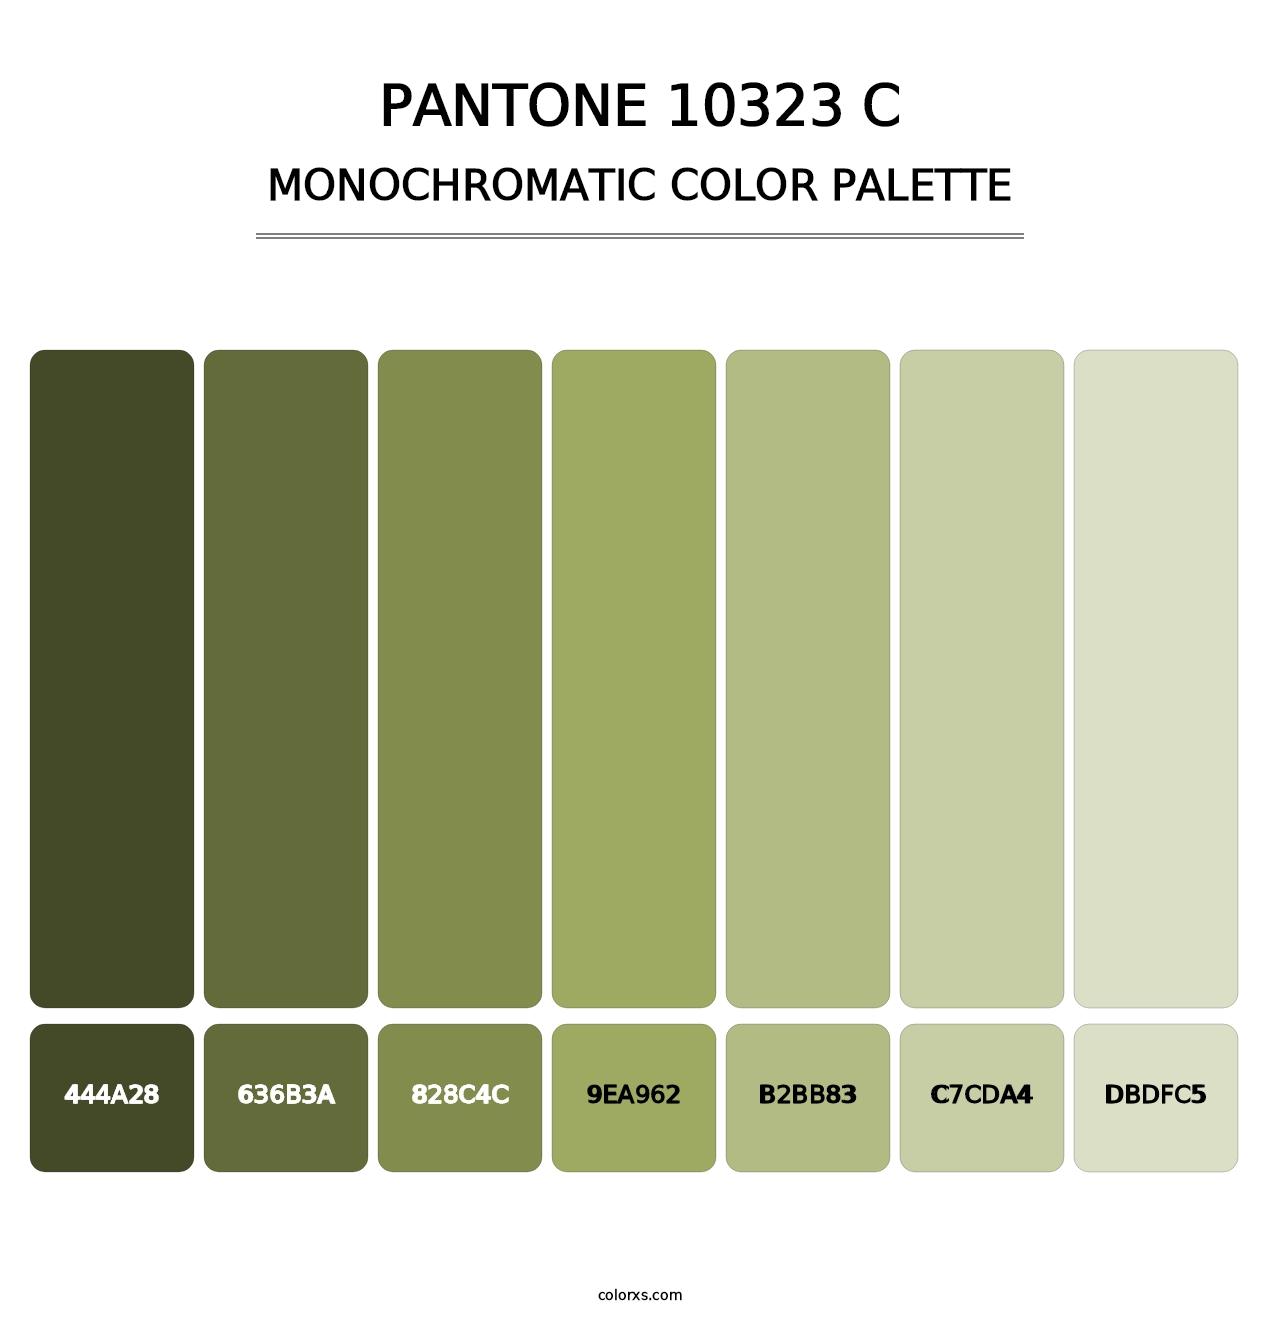 PANTONE 10323 C - Monochromatic Color Palette